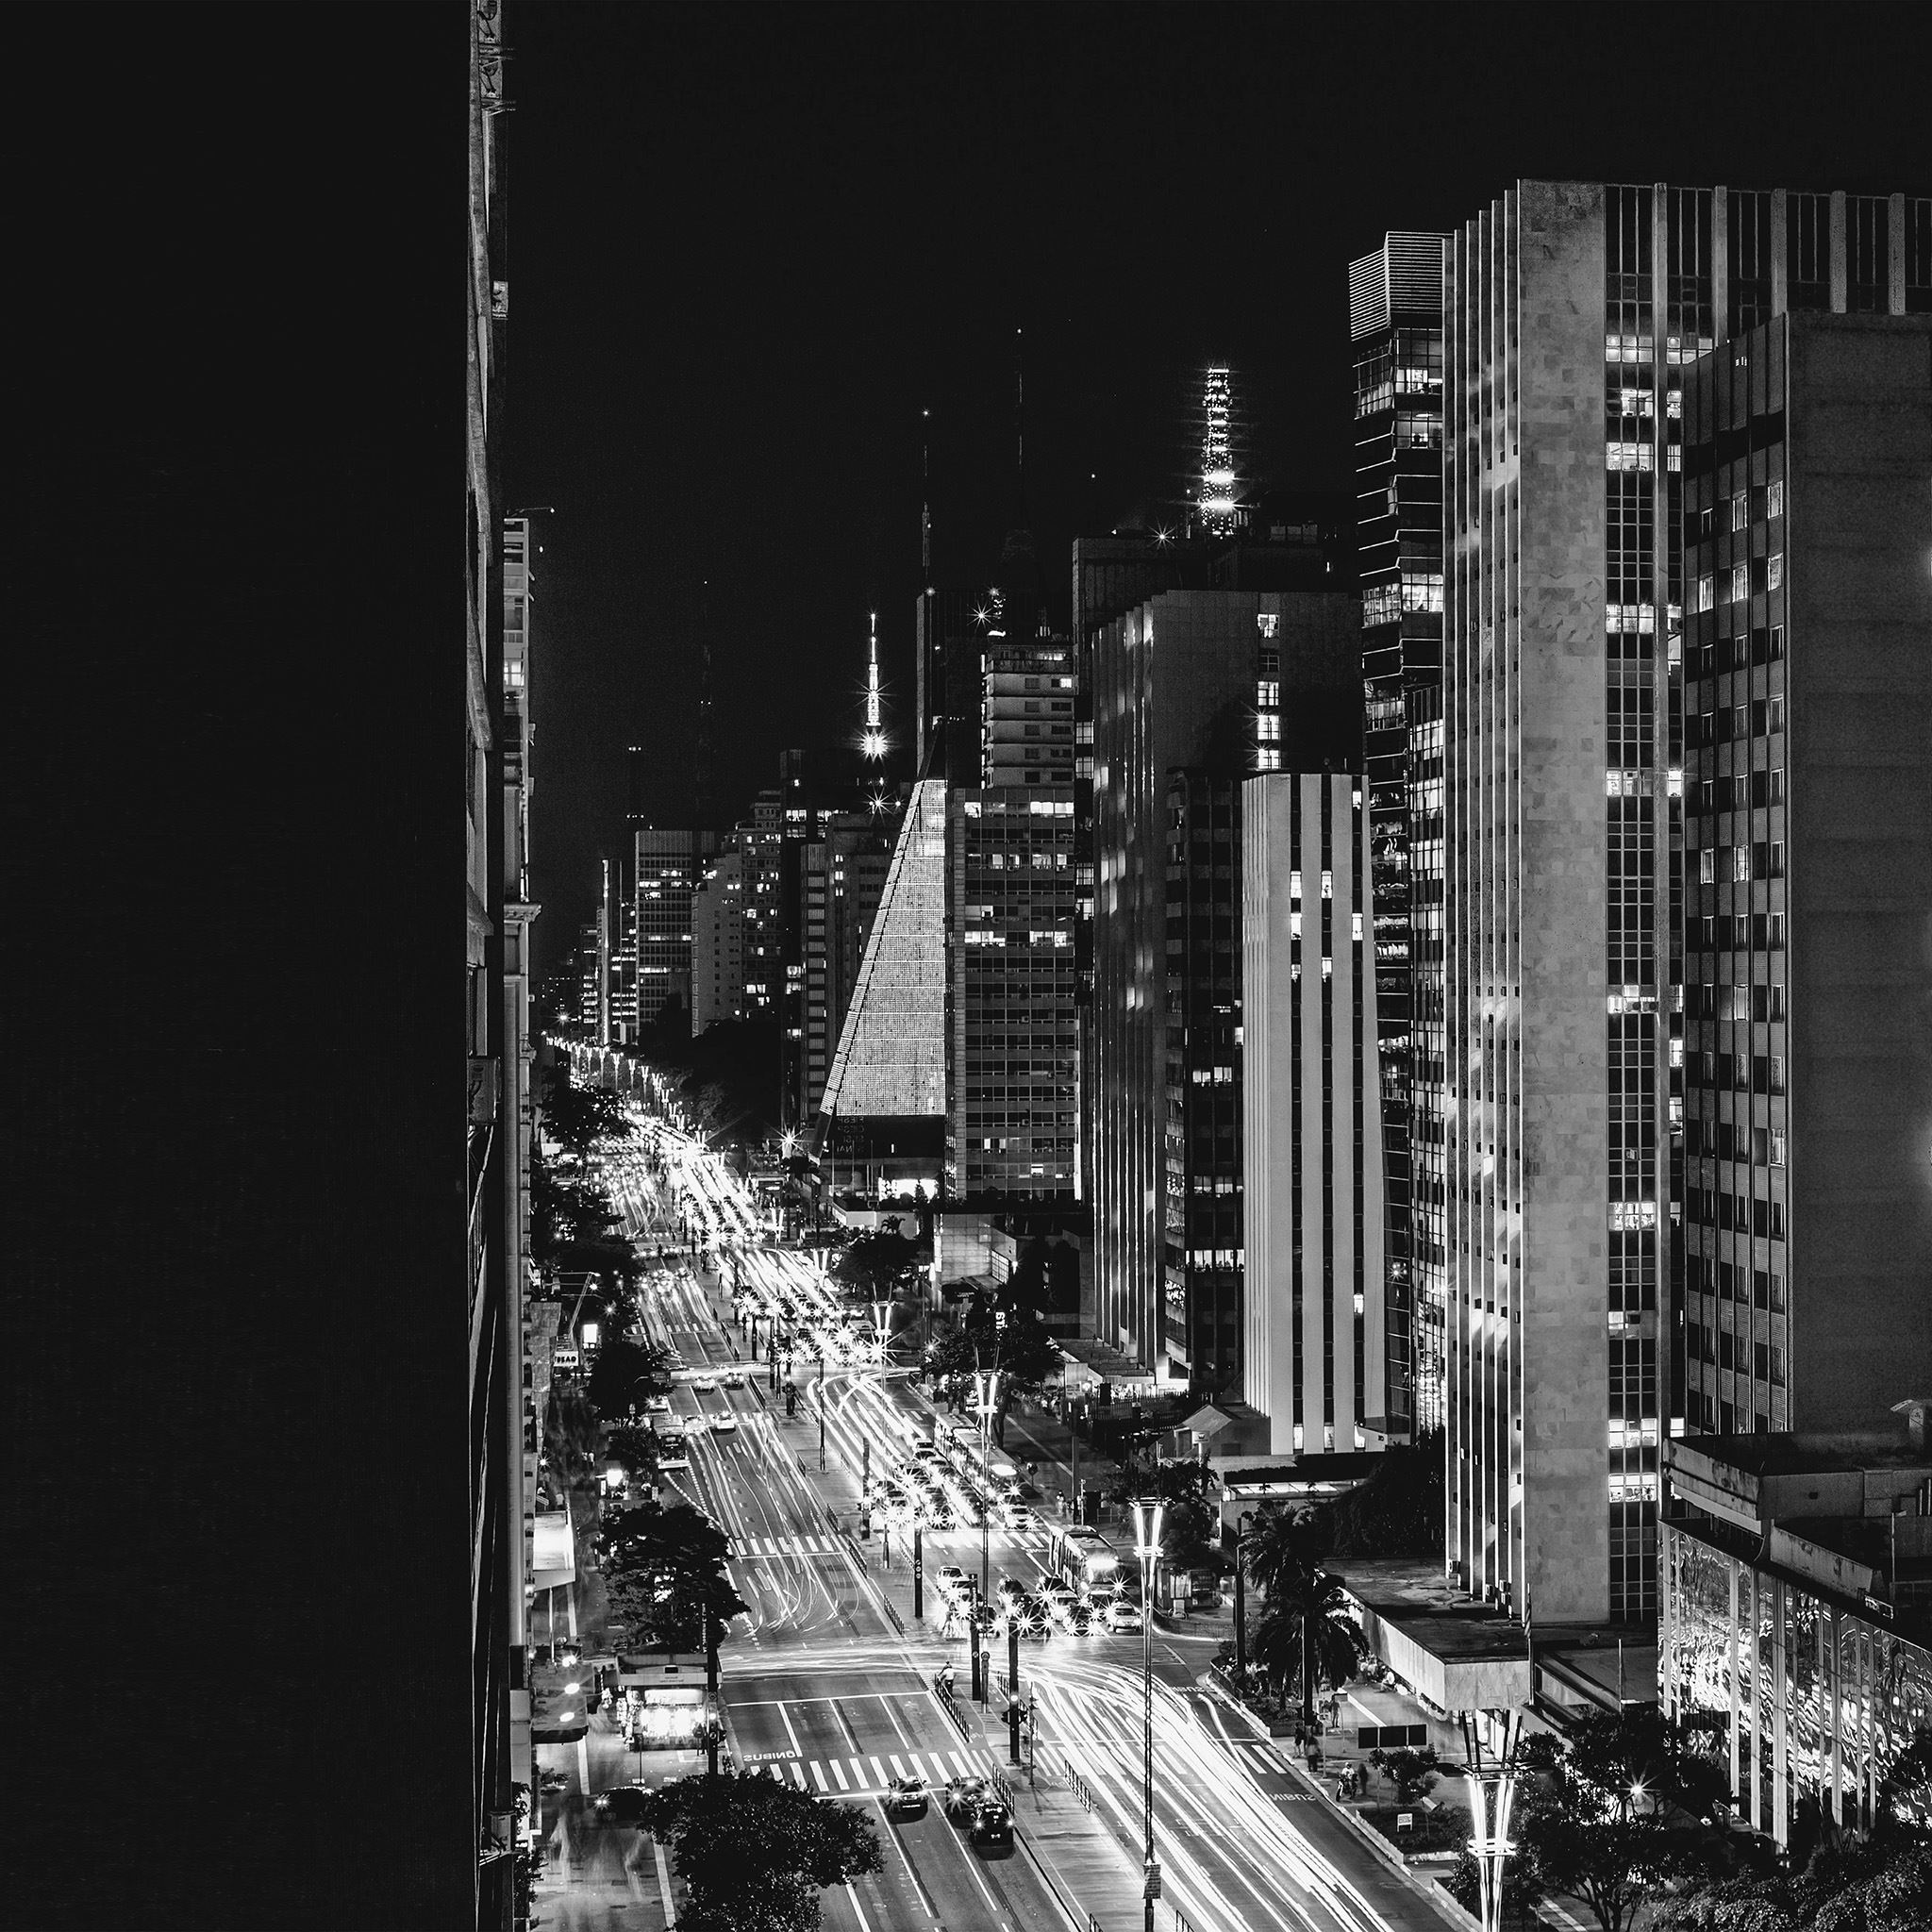 City Night View Urban Street Bw Dark iPad Air wallpaper 